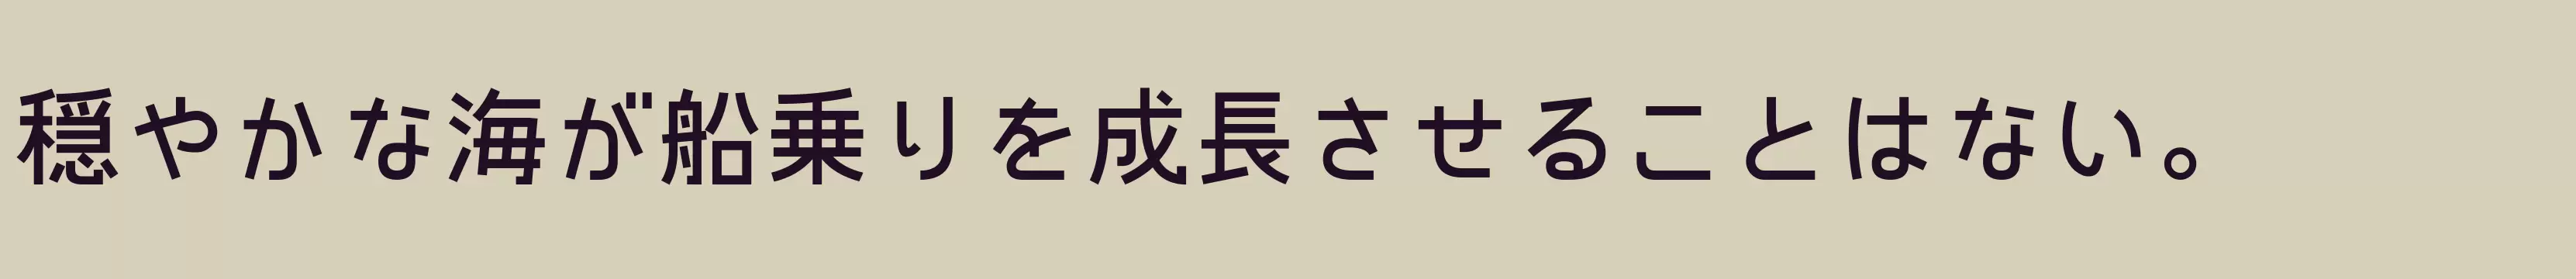 「KonatuTohaba」字体效果图